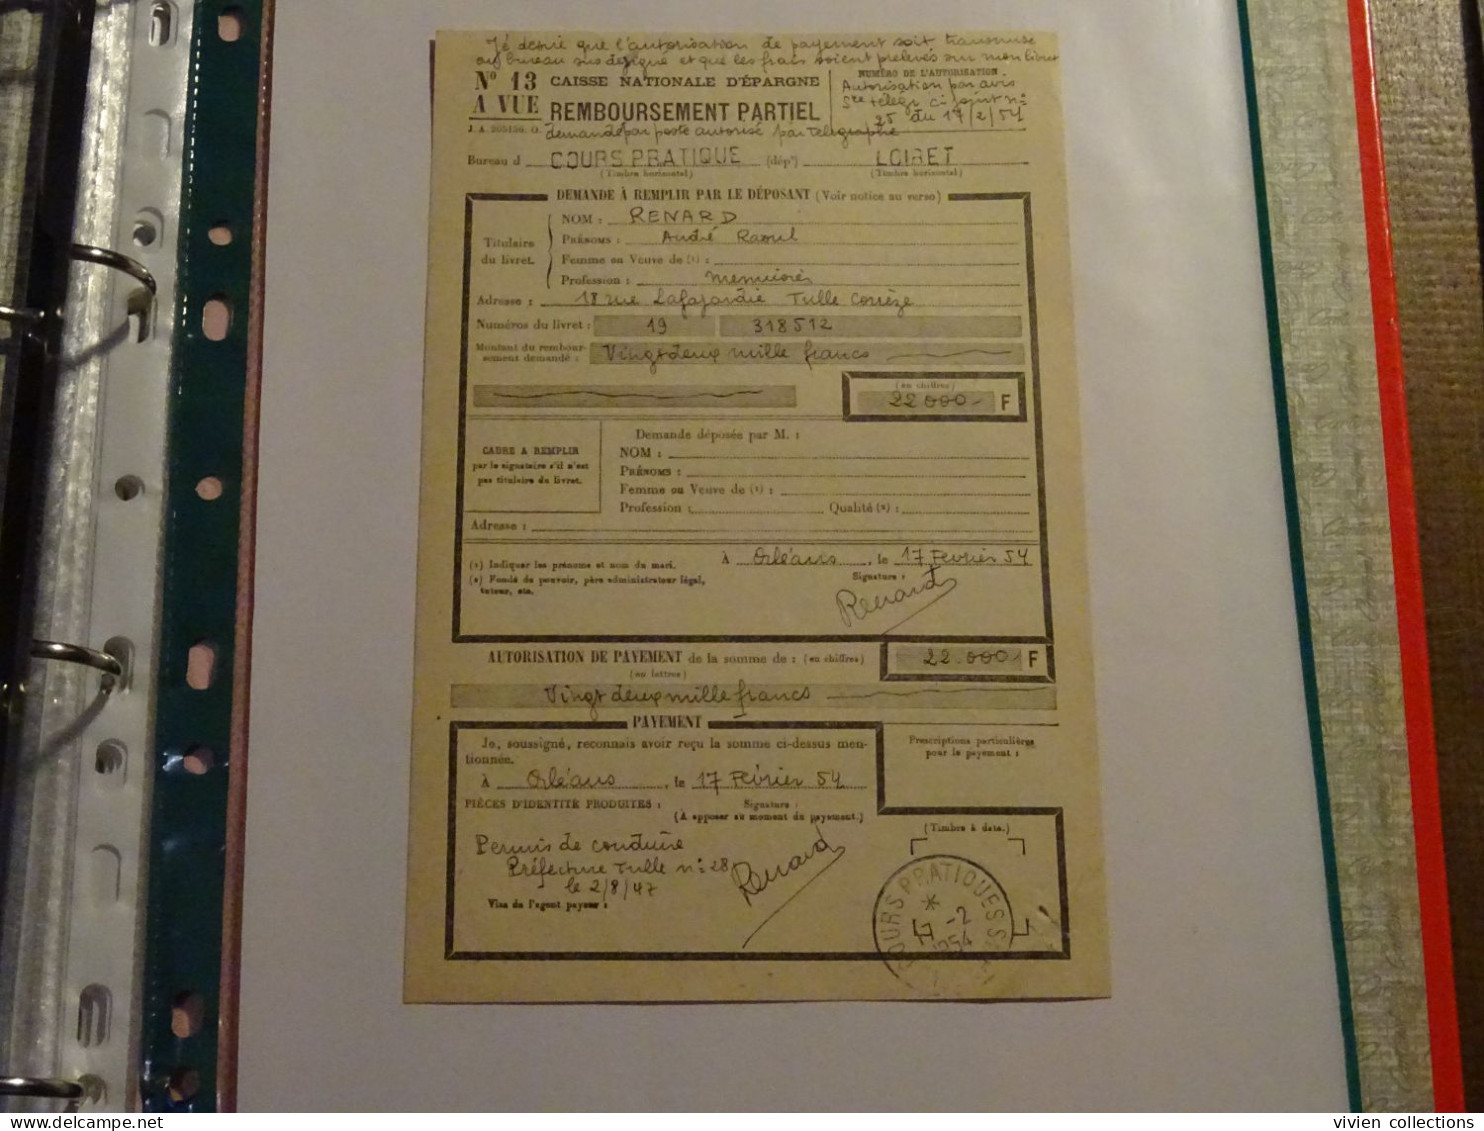 France Cours Pratique D'instruction Orléans 1954 Télégramme Remboursement A Vue Partiel CNE M. Renard Menuisier à Tulle - Lehrkurse